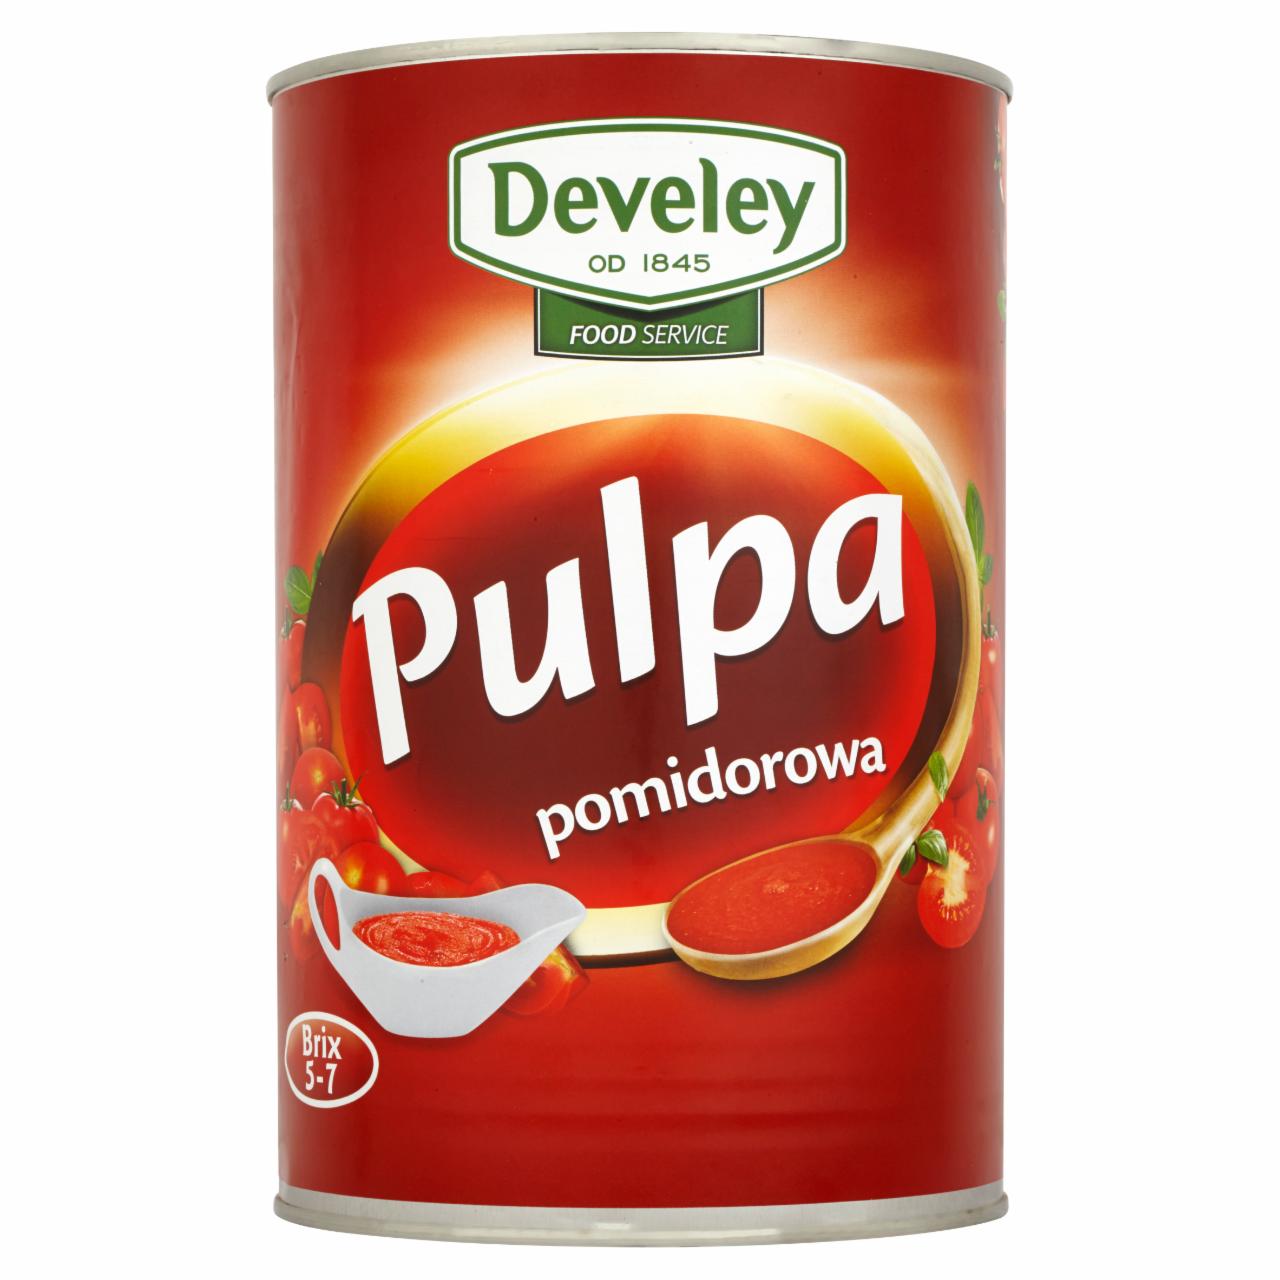 Zdjęcia - Develey Pulpa pomidorowa 4 kg